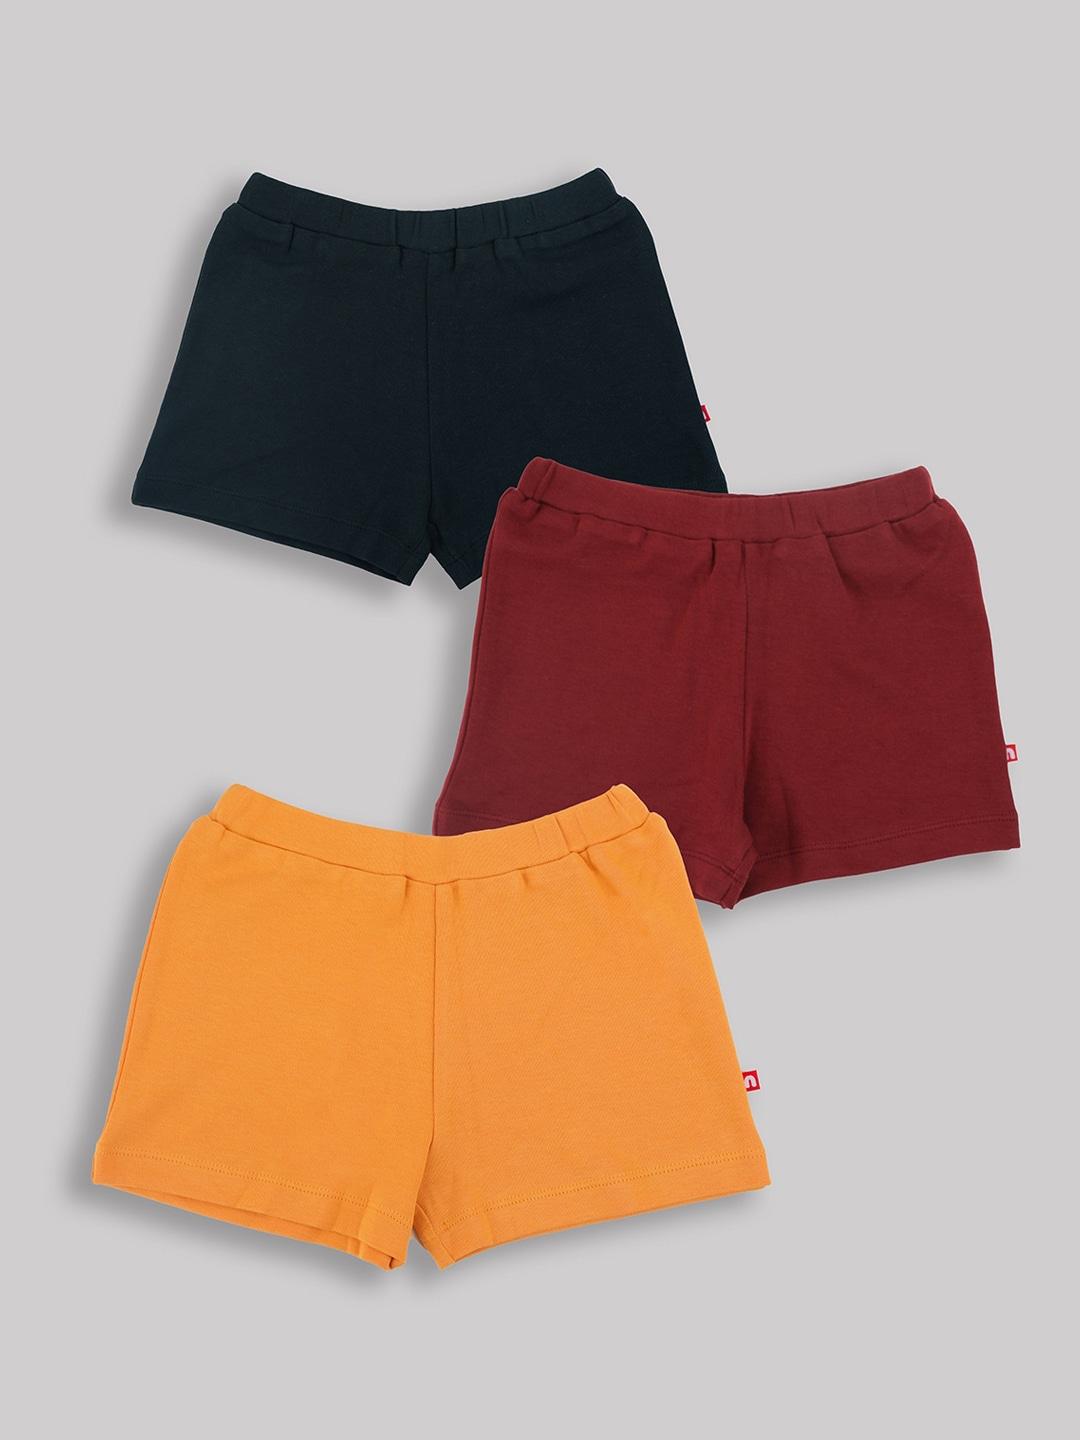 nino bambino boys multipack of 3 hot pants shorts